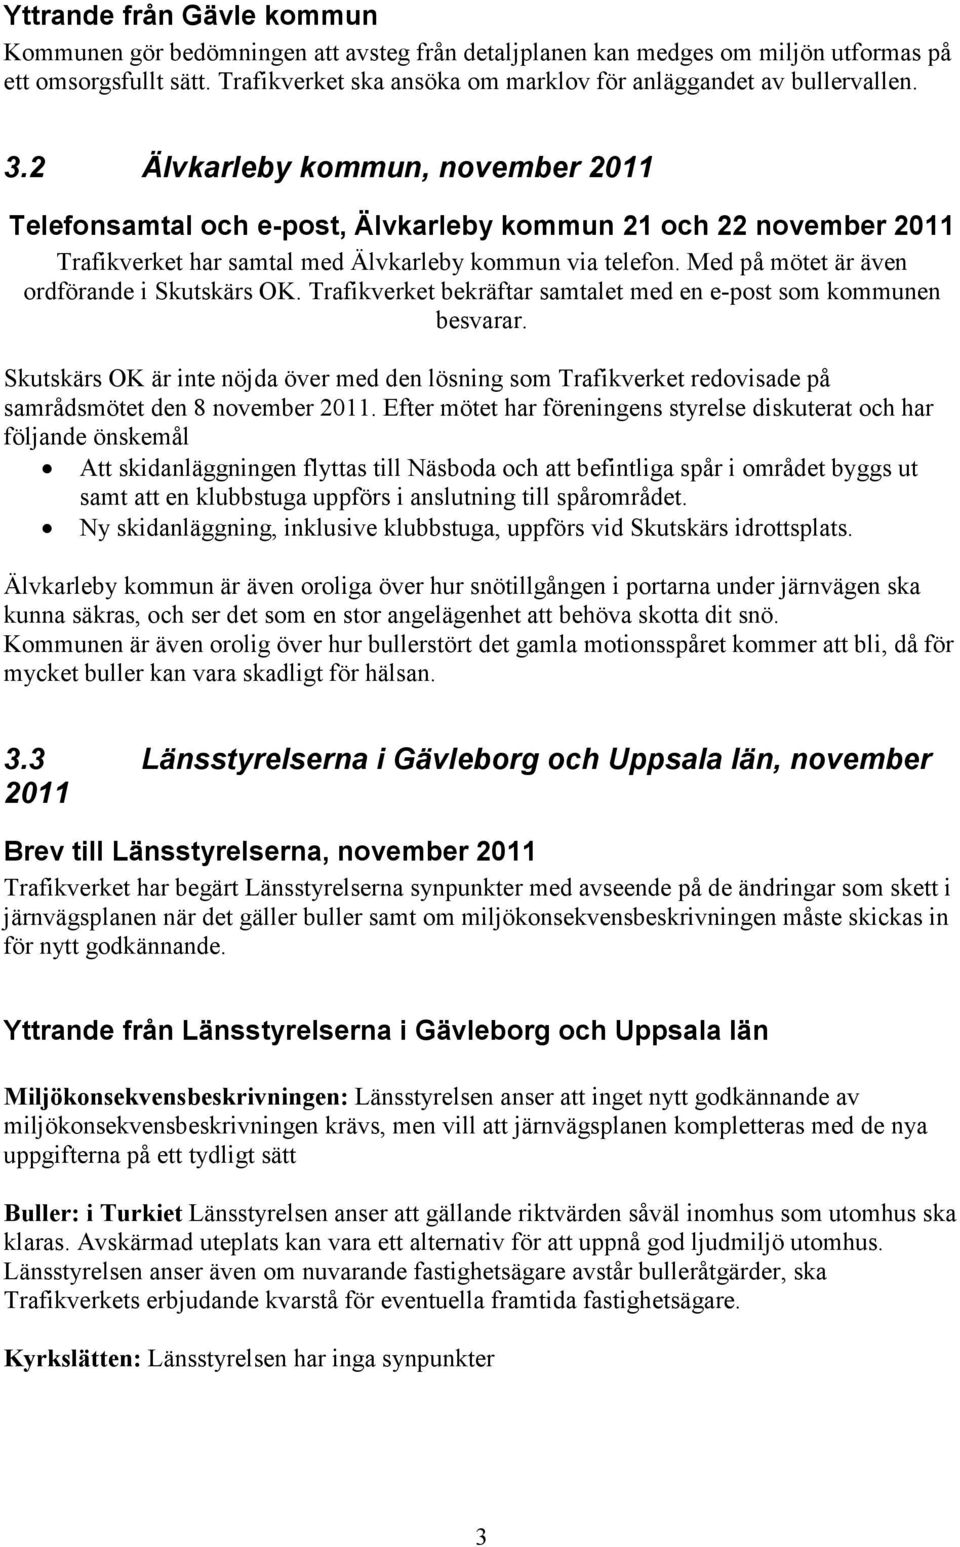 2 Älvkarleby kommun, november 2011 Telefonsamtal och e-post, Älvkarleby kommun 21 och 22 november 2011 Trafikverket har samtal med Älvkarleby kommun via telefon.